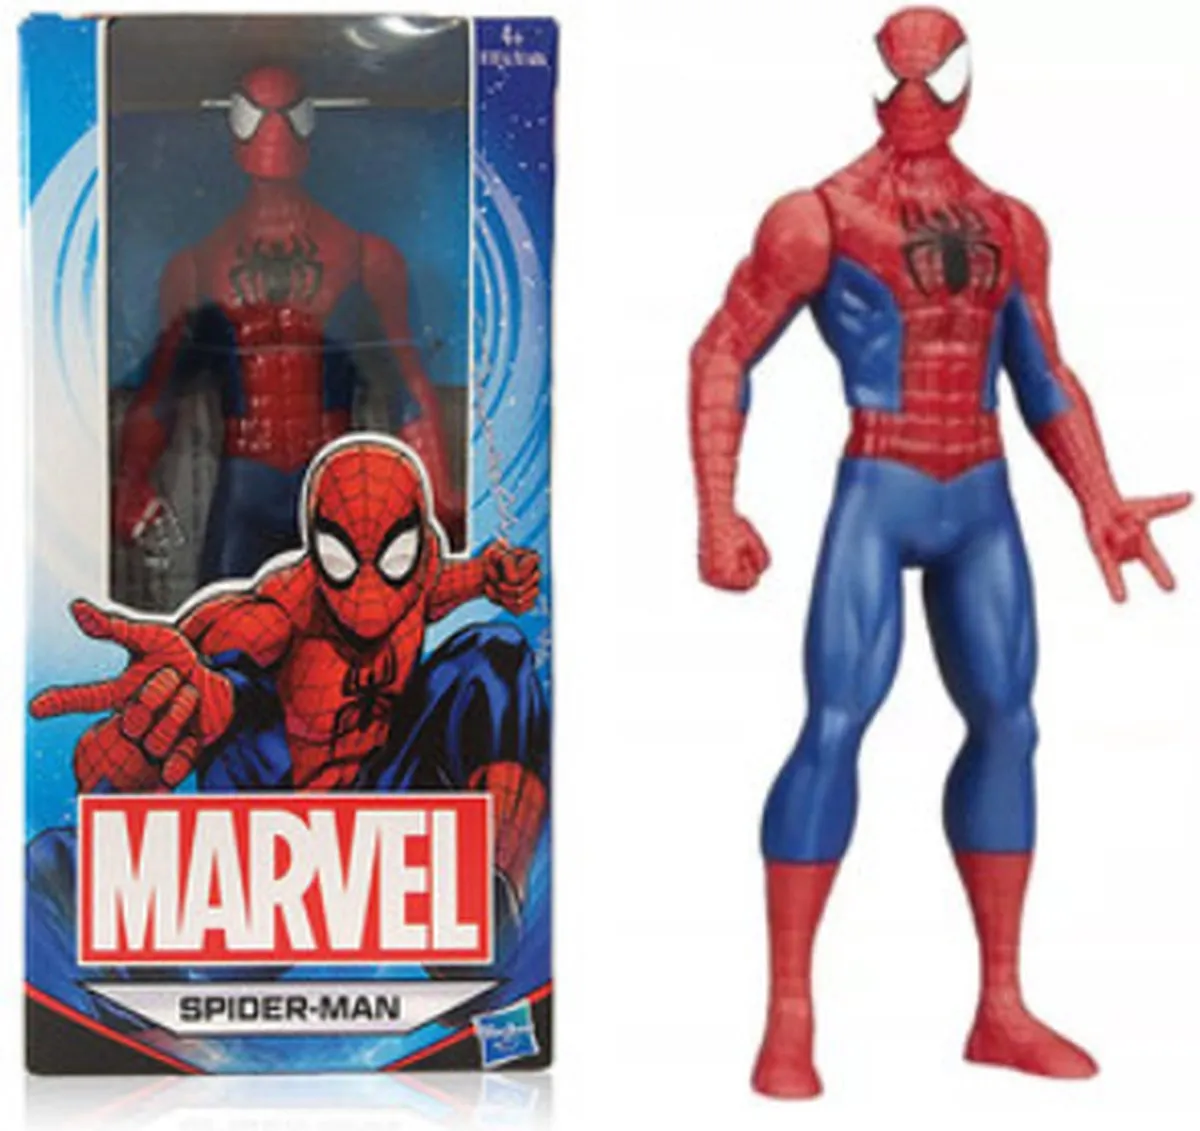 Spiderman actiefiguur Marvel 15 cm - Avengers speelfiguur speelgoed